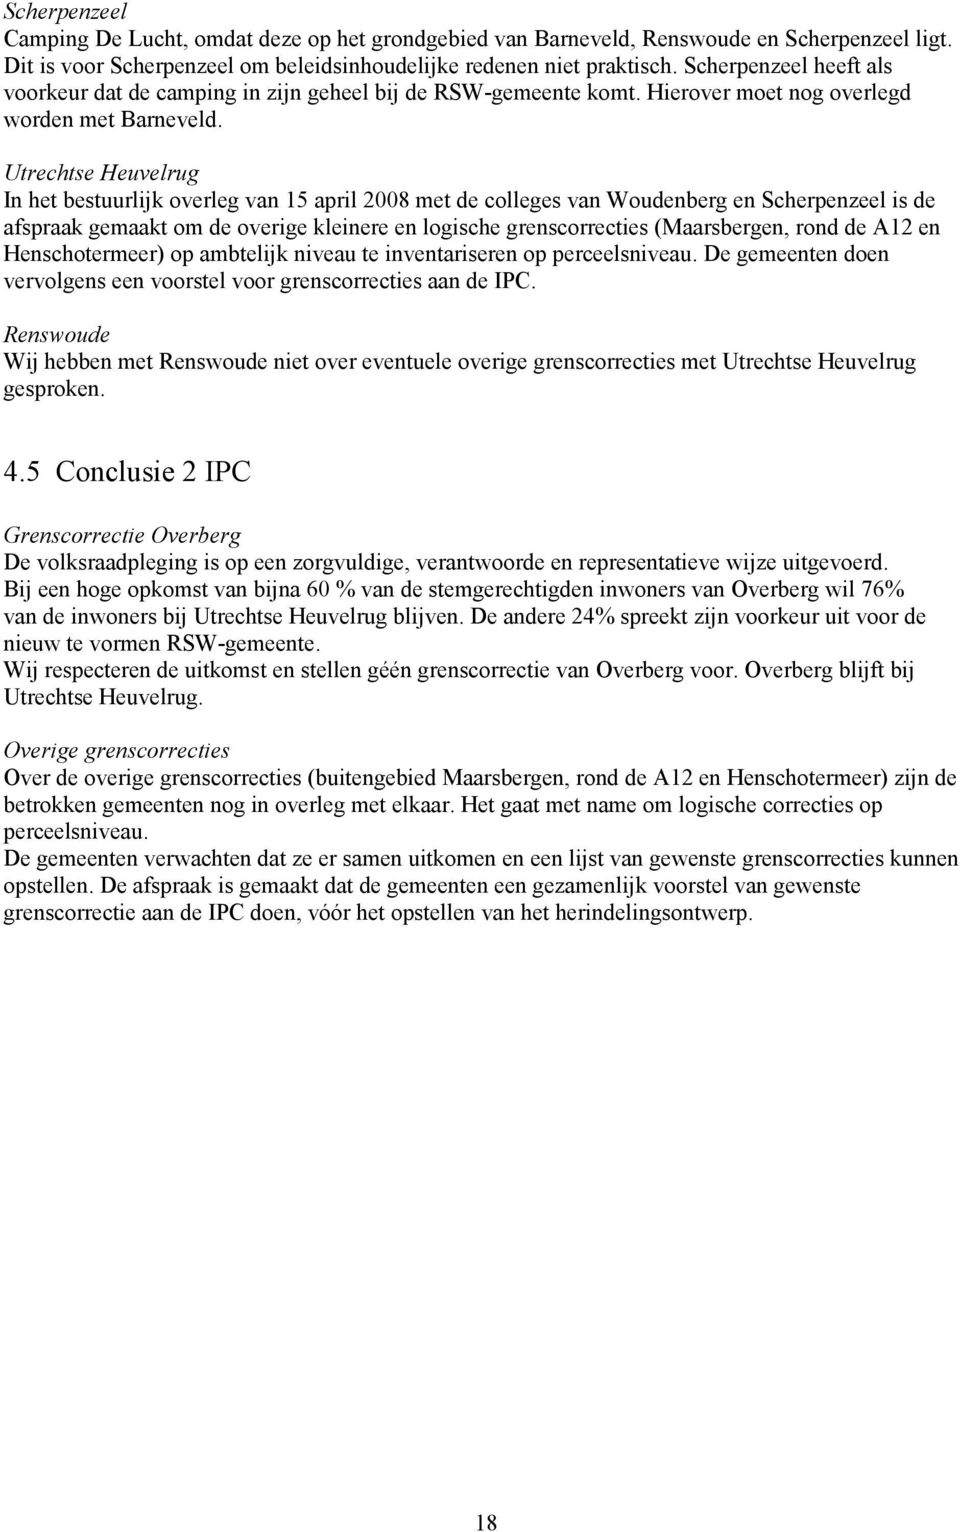 Utrechtse Heuvelrug In het bestuurlijk overleg van 15 april 2008 met de colleges van Woudenberg en Scherpenzeel is de afspraak gemaakt om de overige kleinere en logische grenscorrecties (Maarsbergen,